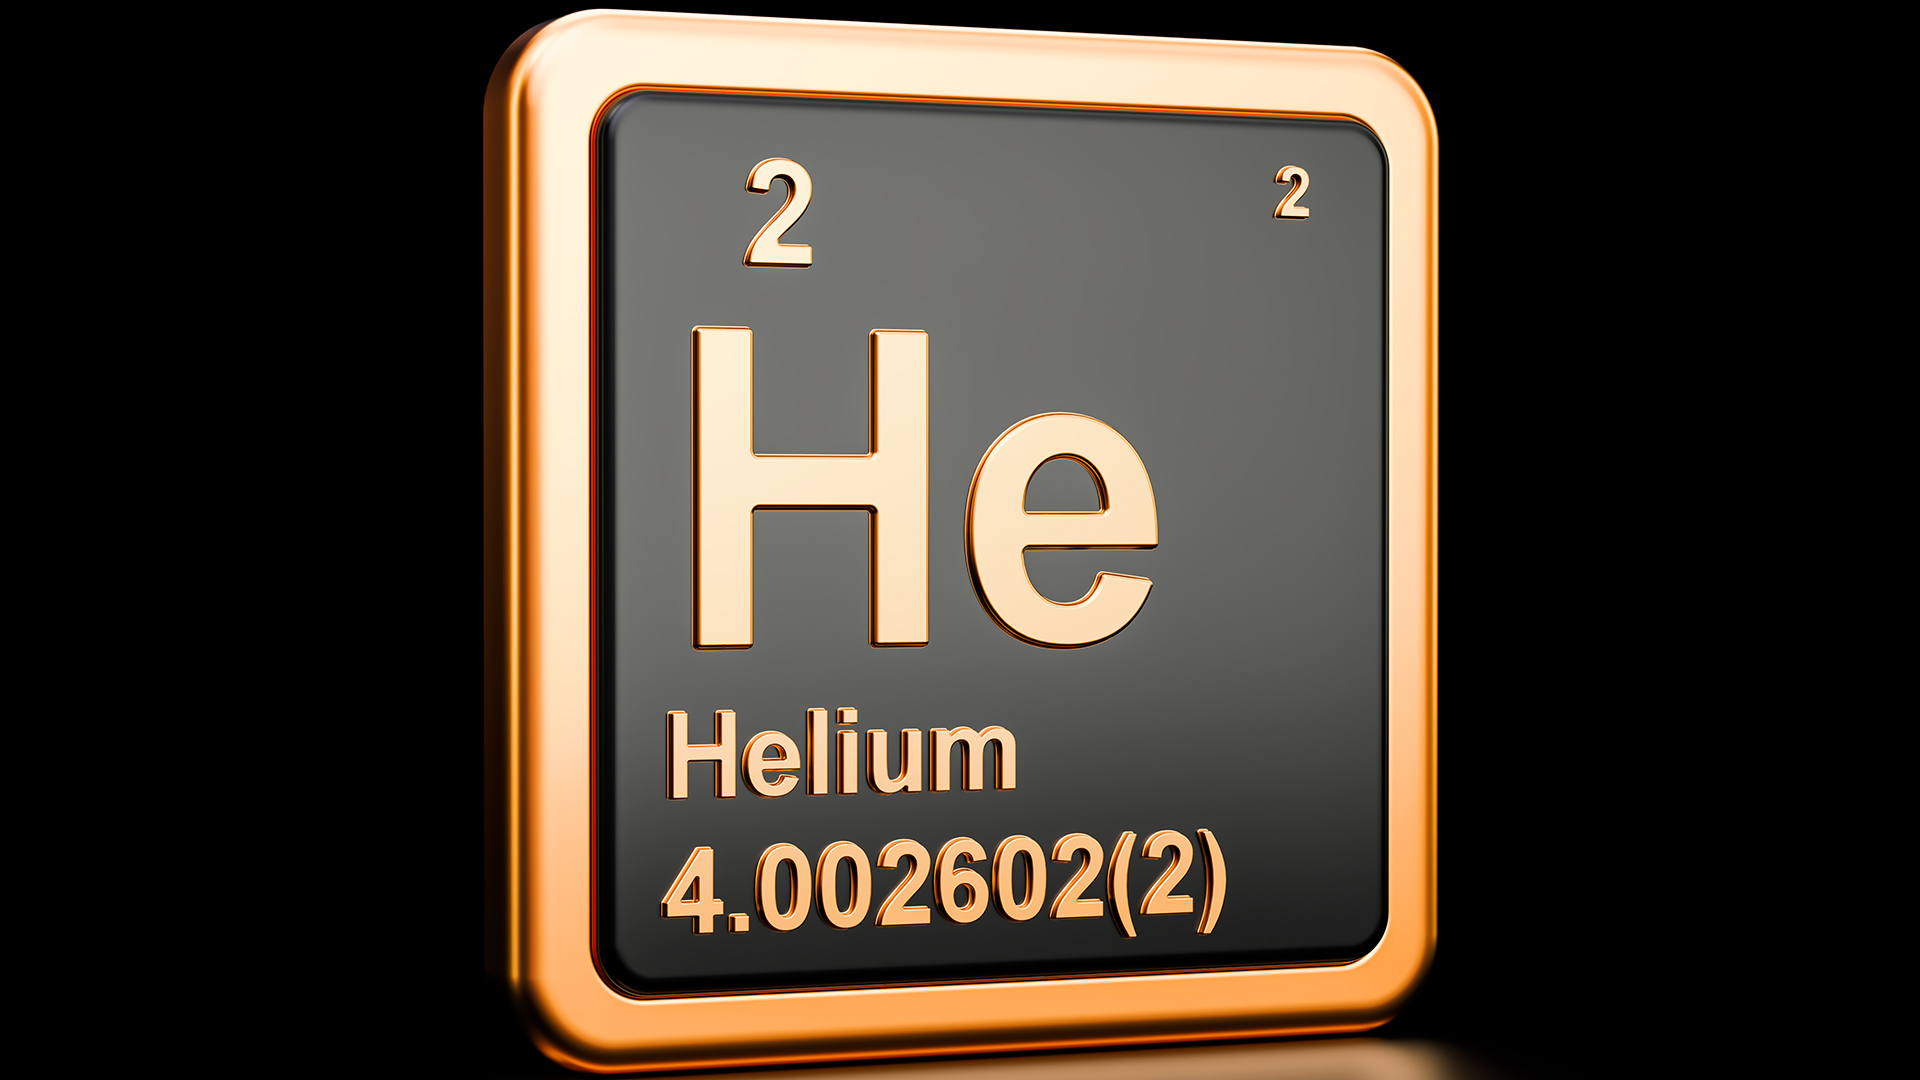 element helium uses